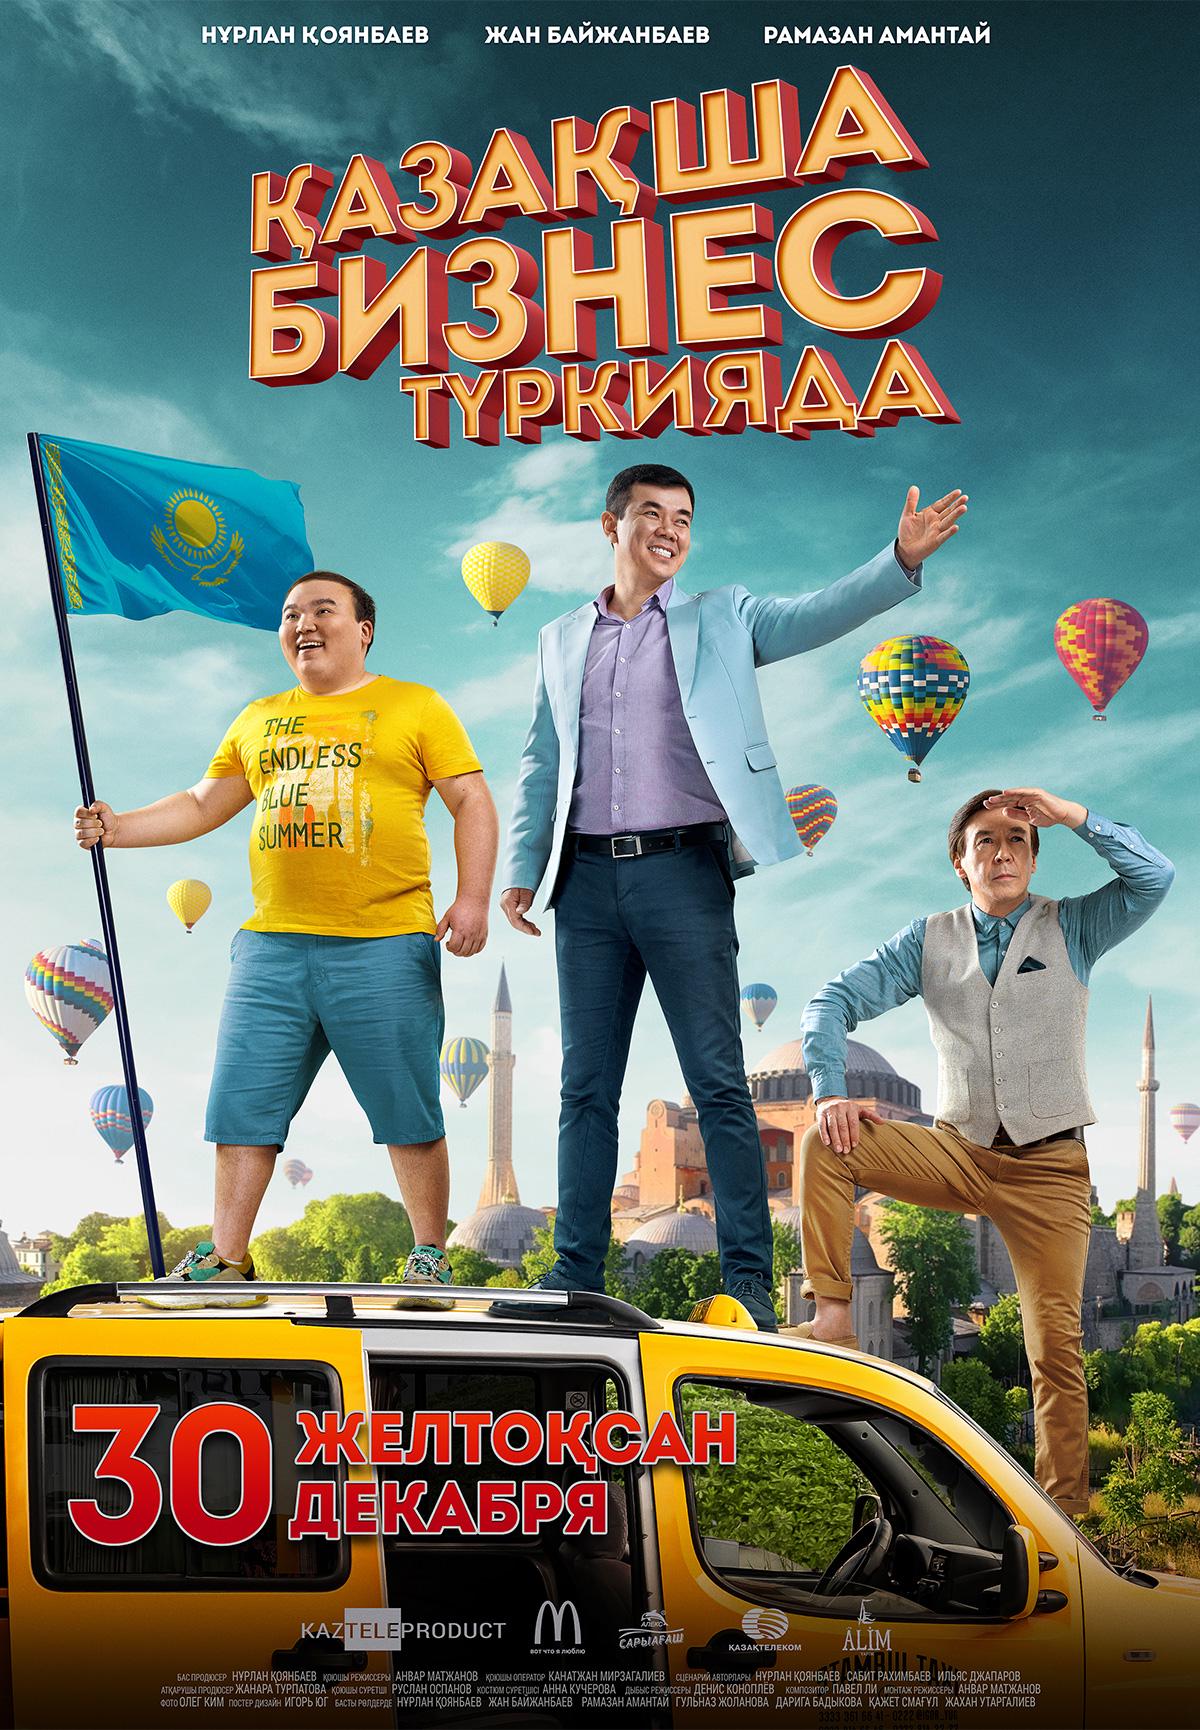 постер фильма Бизнес по-казахски в Турции